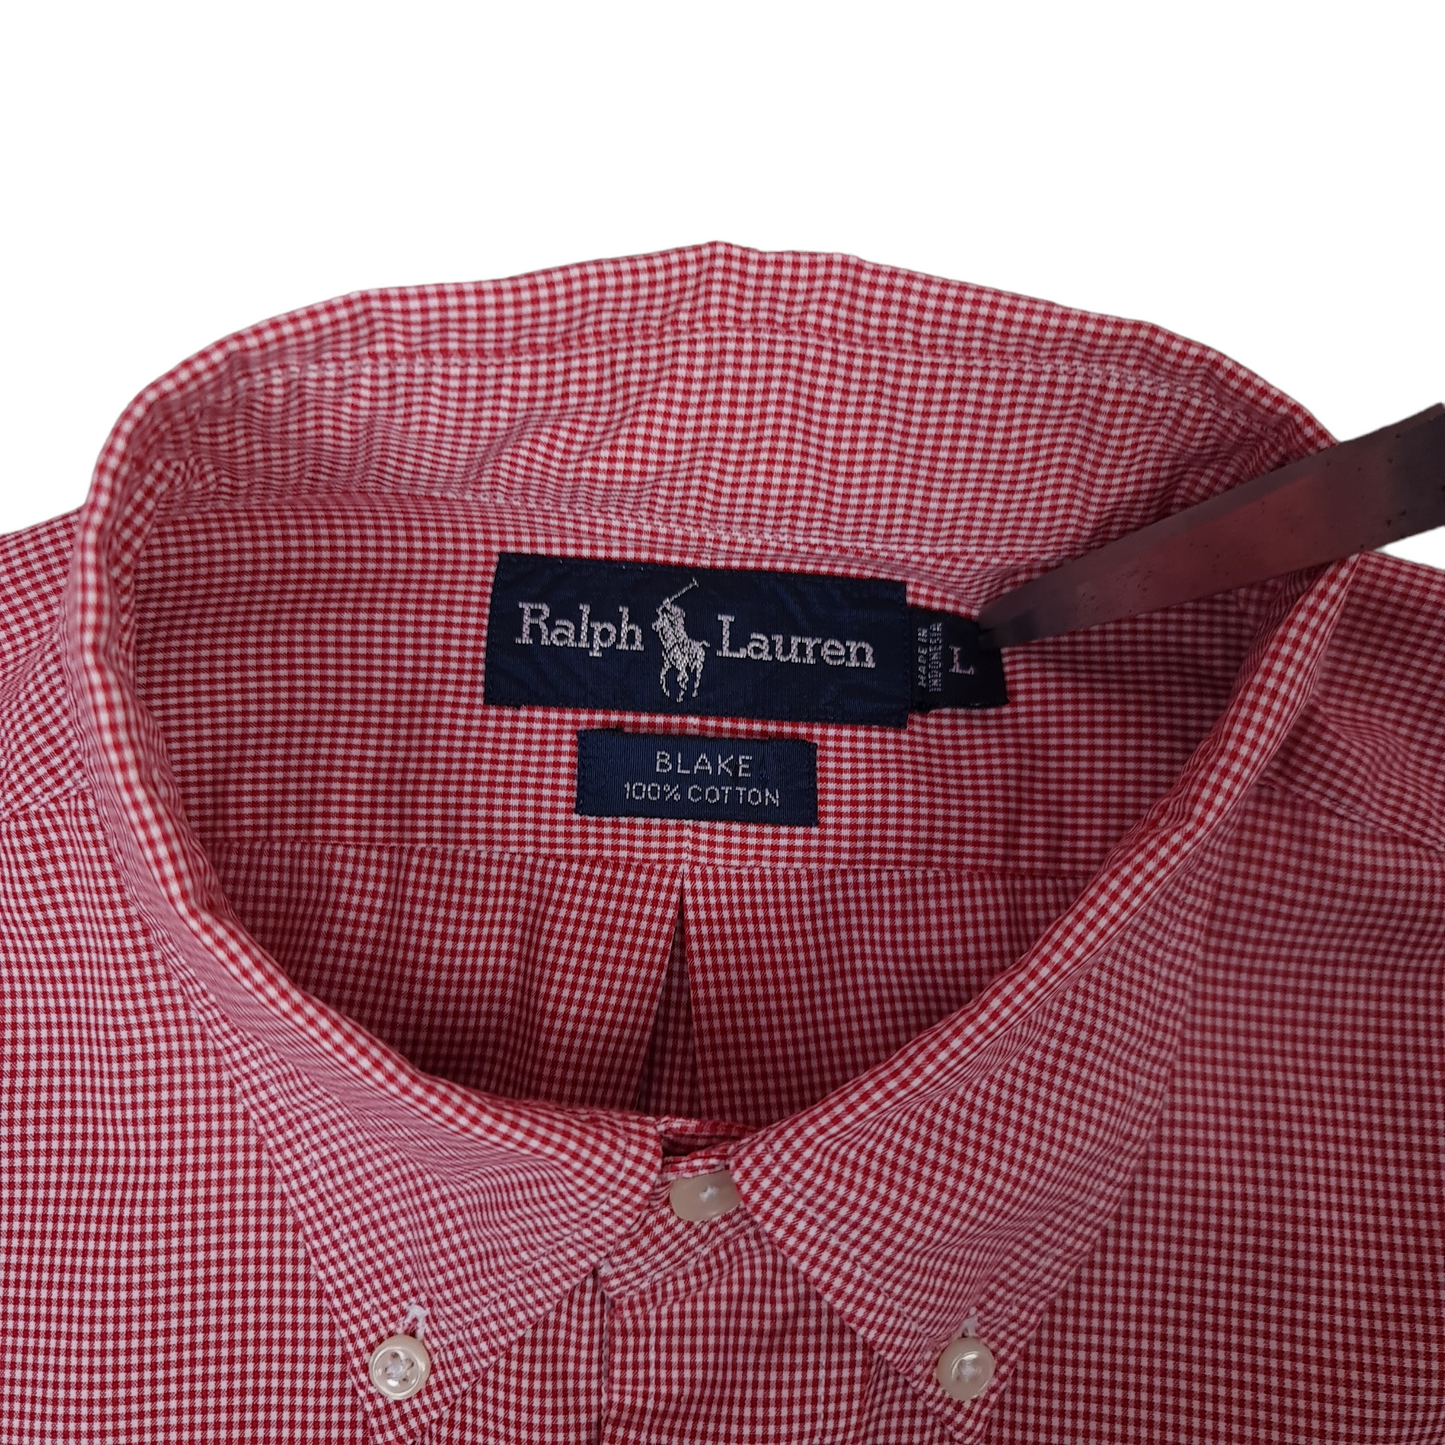 Vintage Ralph Lauren Short Sleeve Button Up Shirt - XL